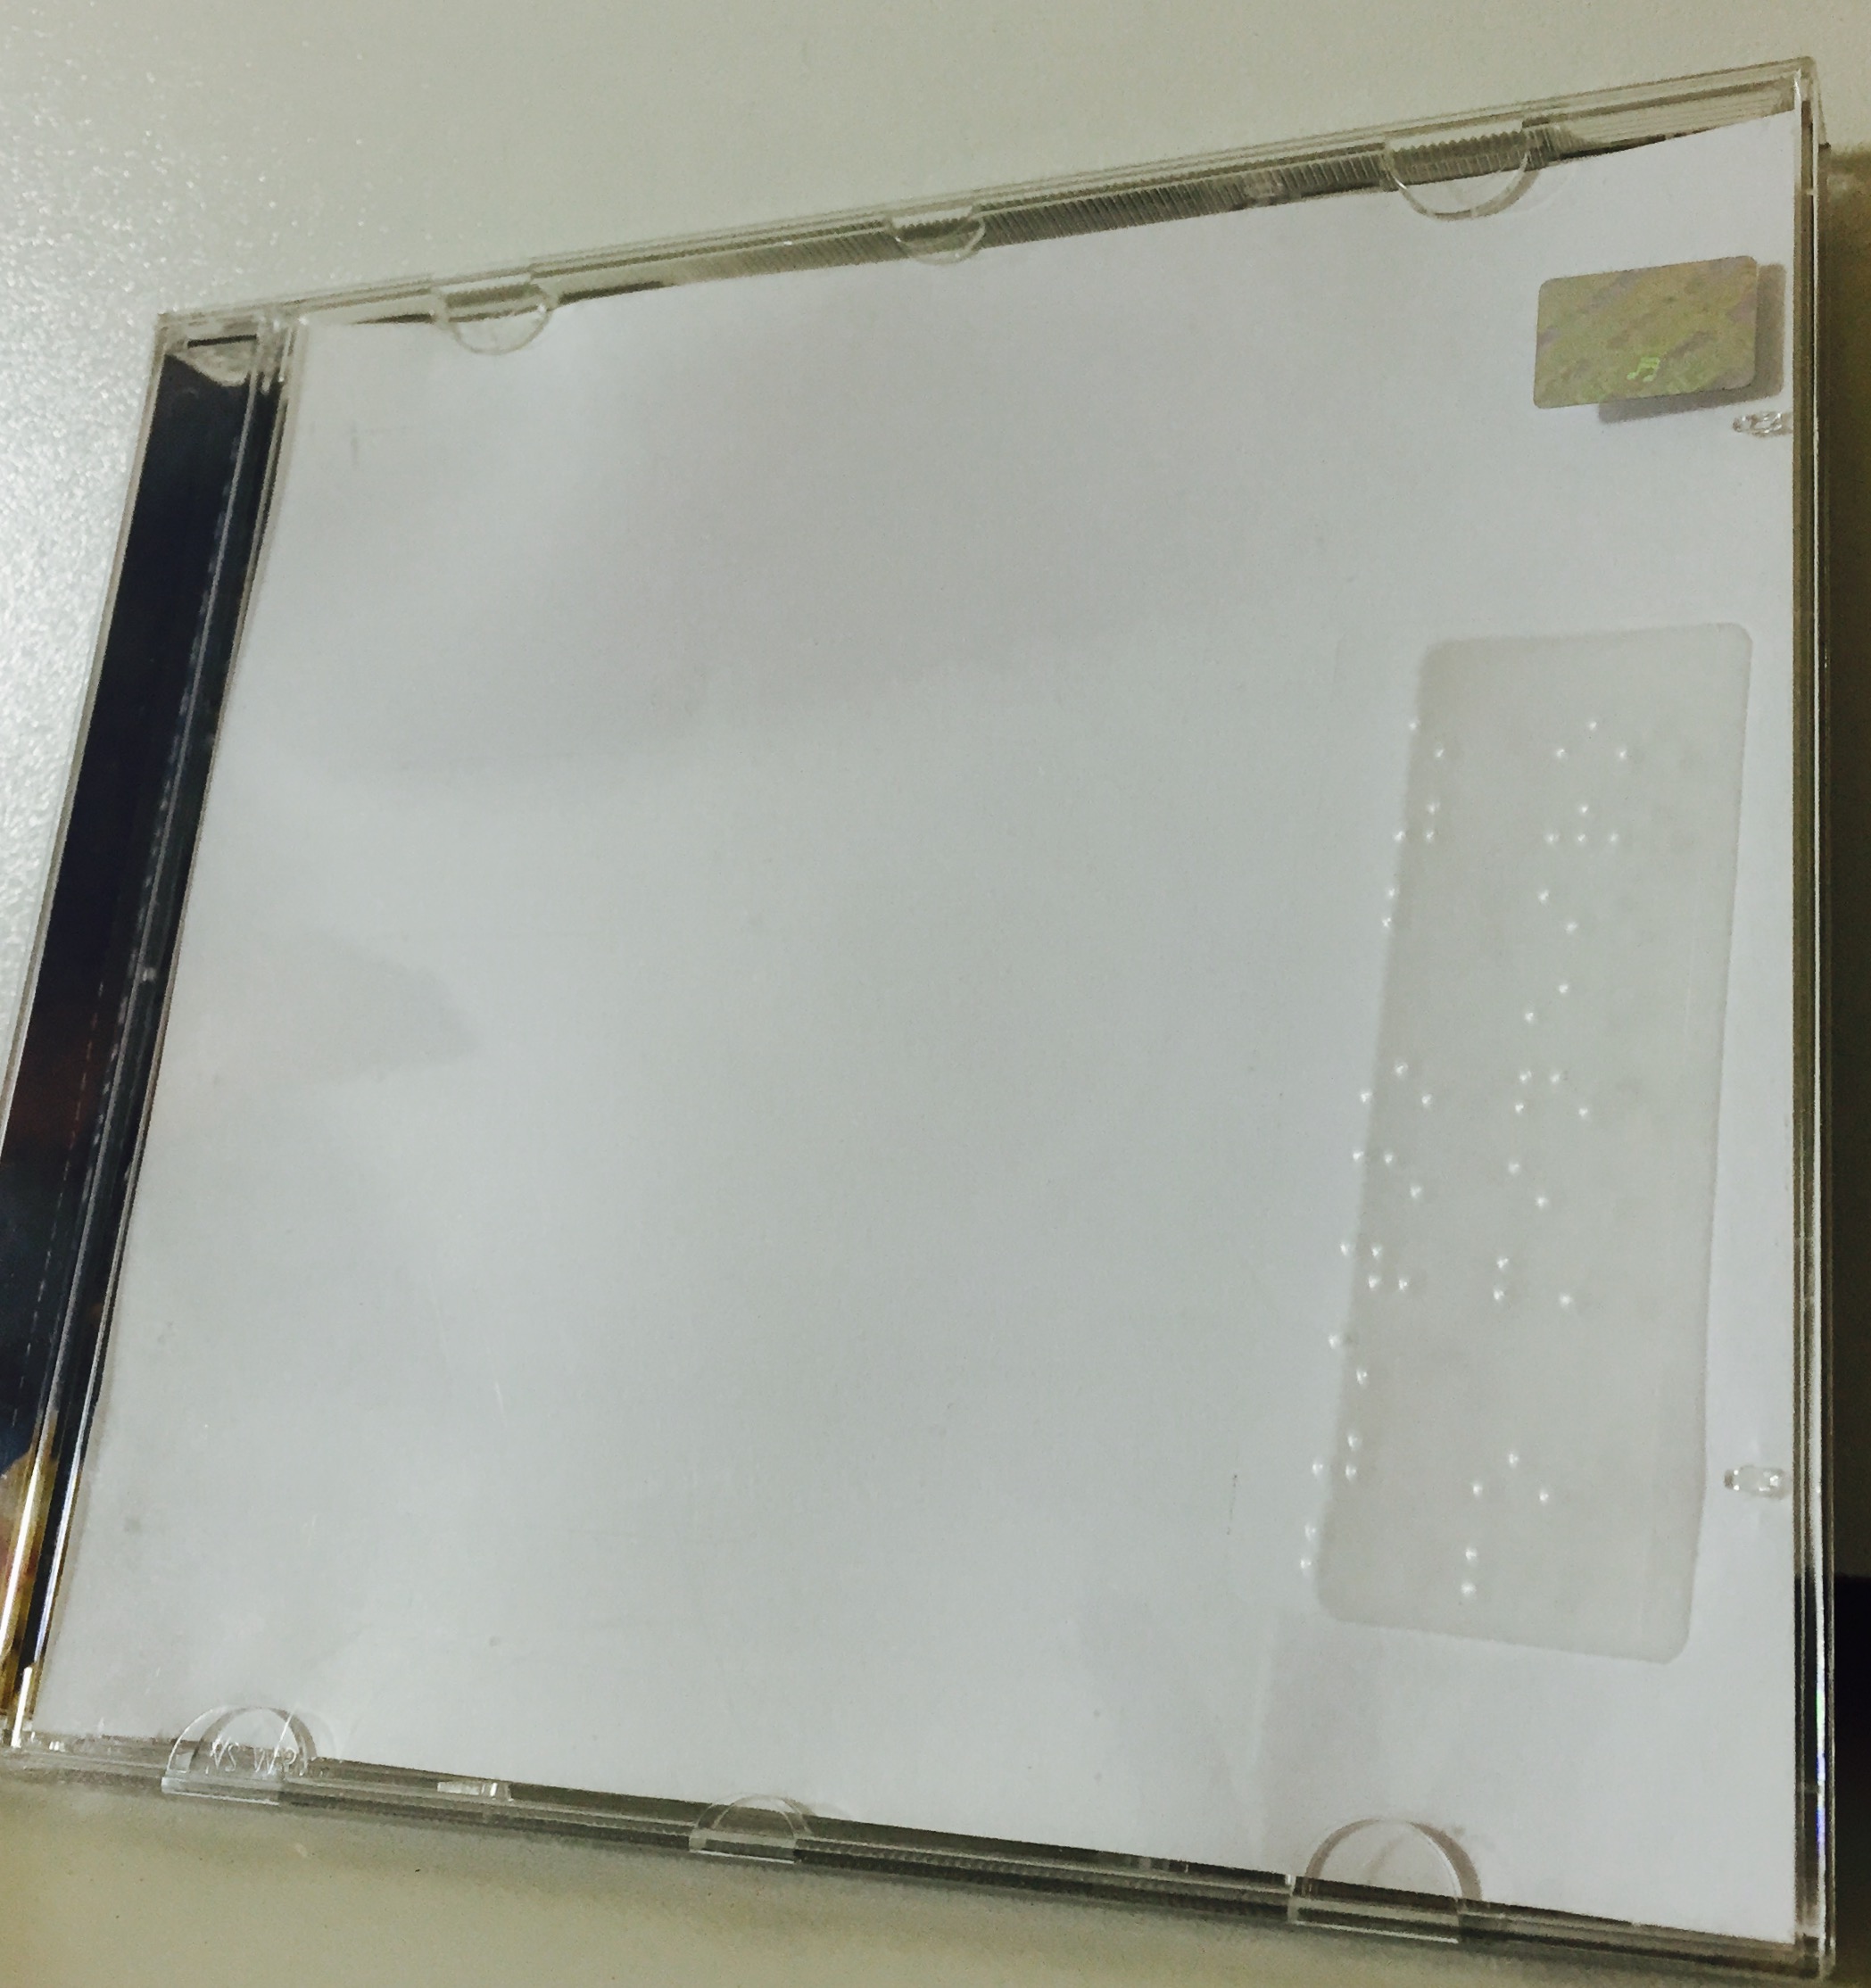 foto da caixa de um cd com uma etiqueta transparente em Braille